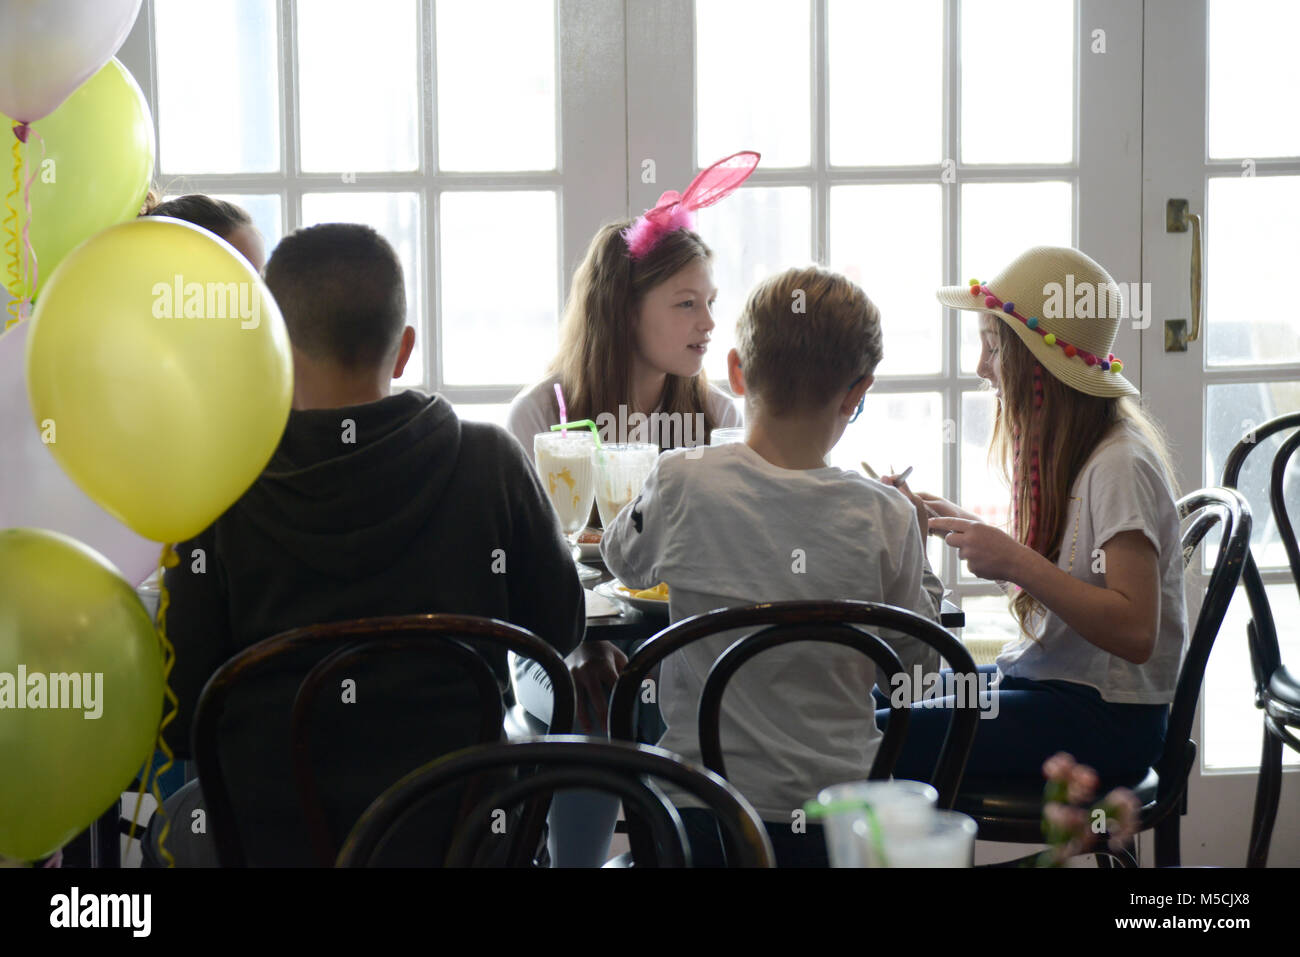 Vier junge Kinder sitzen auf einer Party Tisch essen gebratene Nahrung und trinken Milchshakes - es gibt Ballons und Party Dekorationen Stockfoto